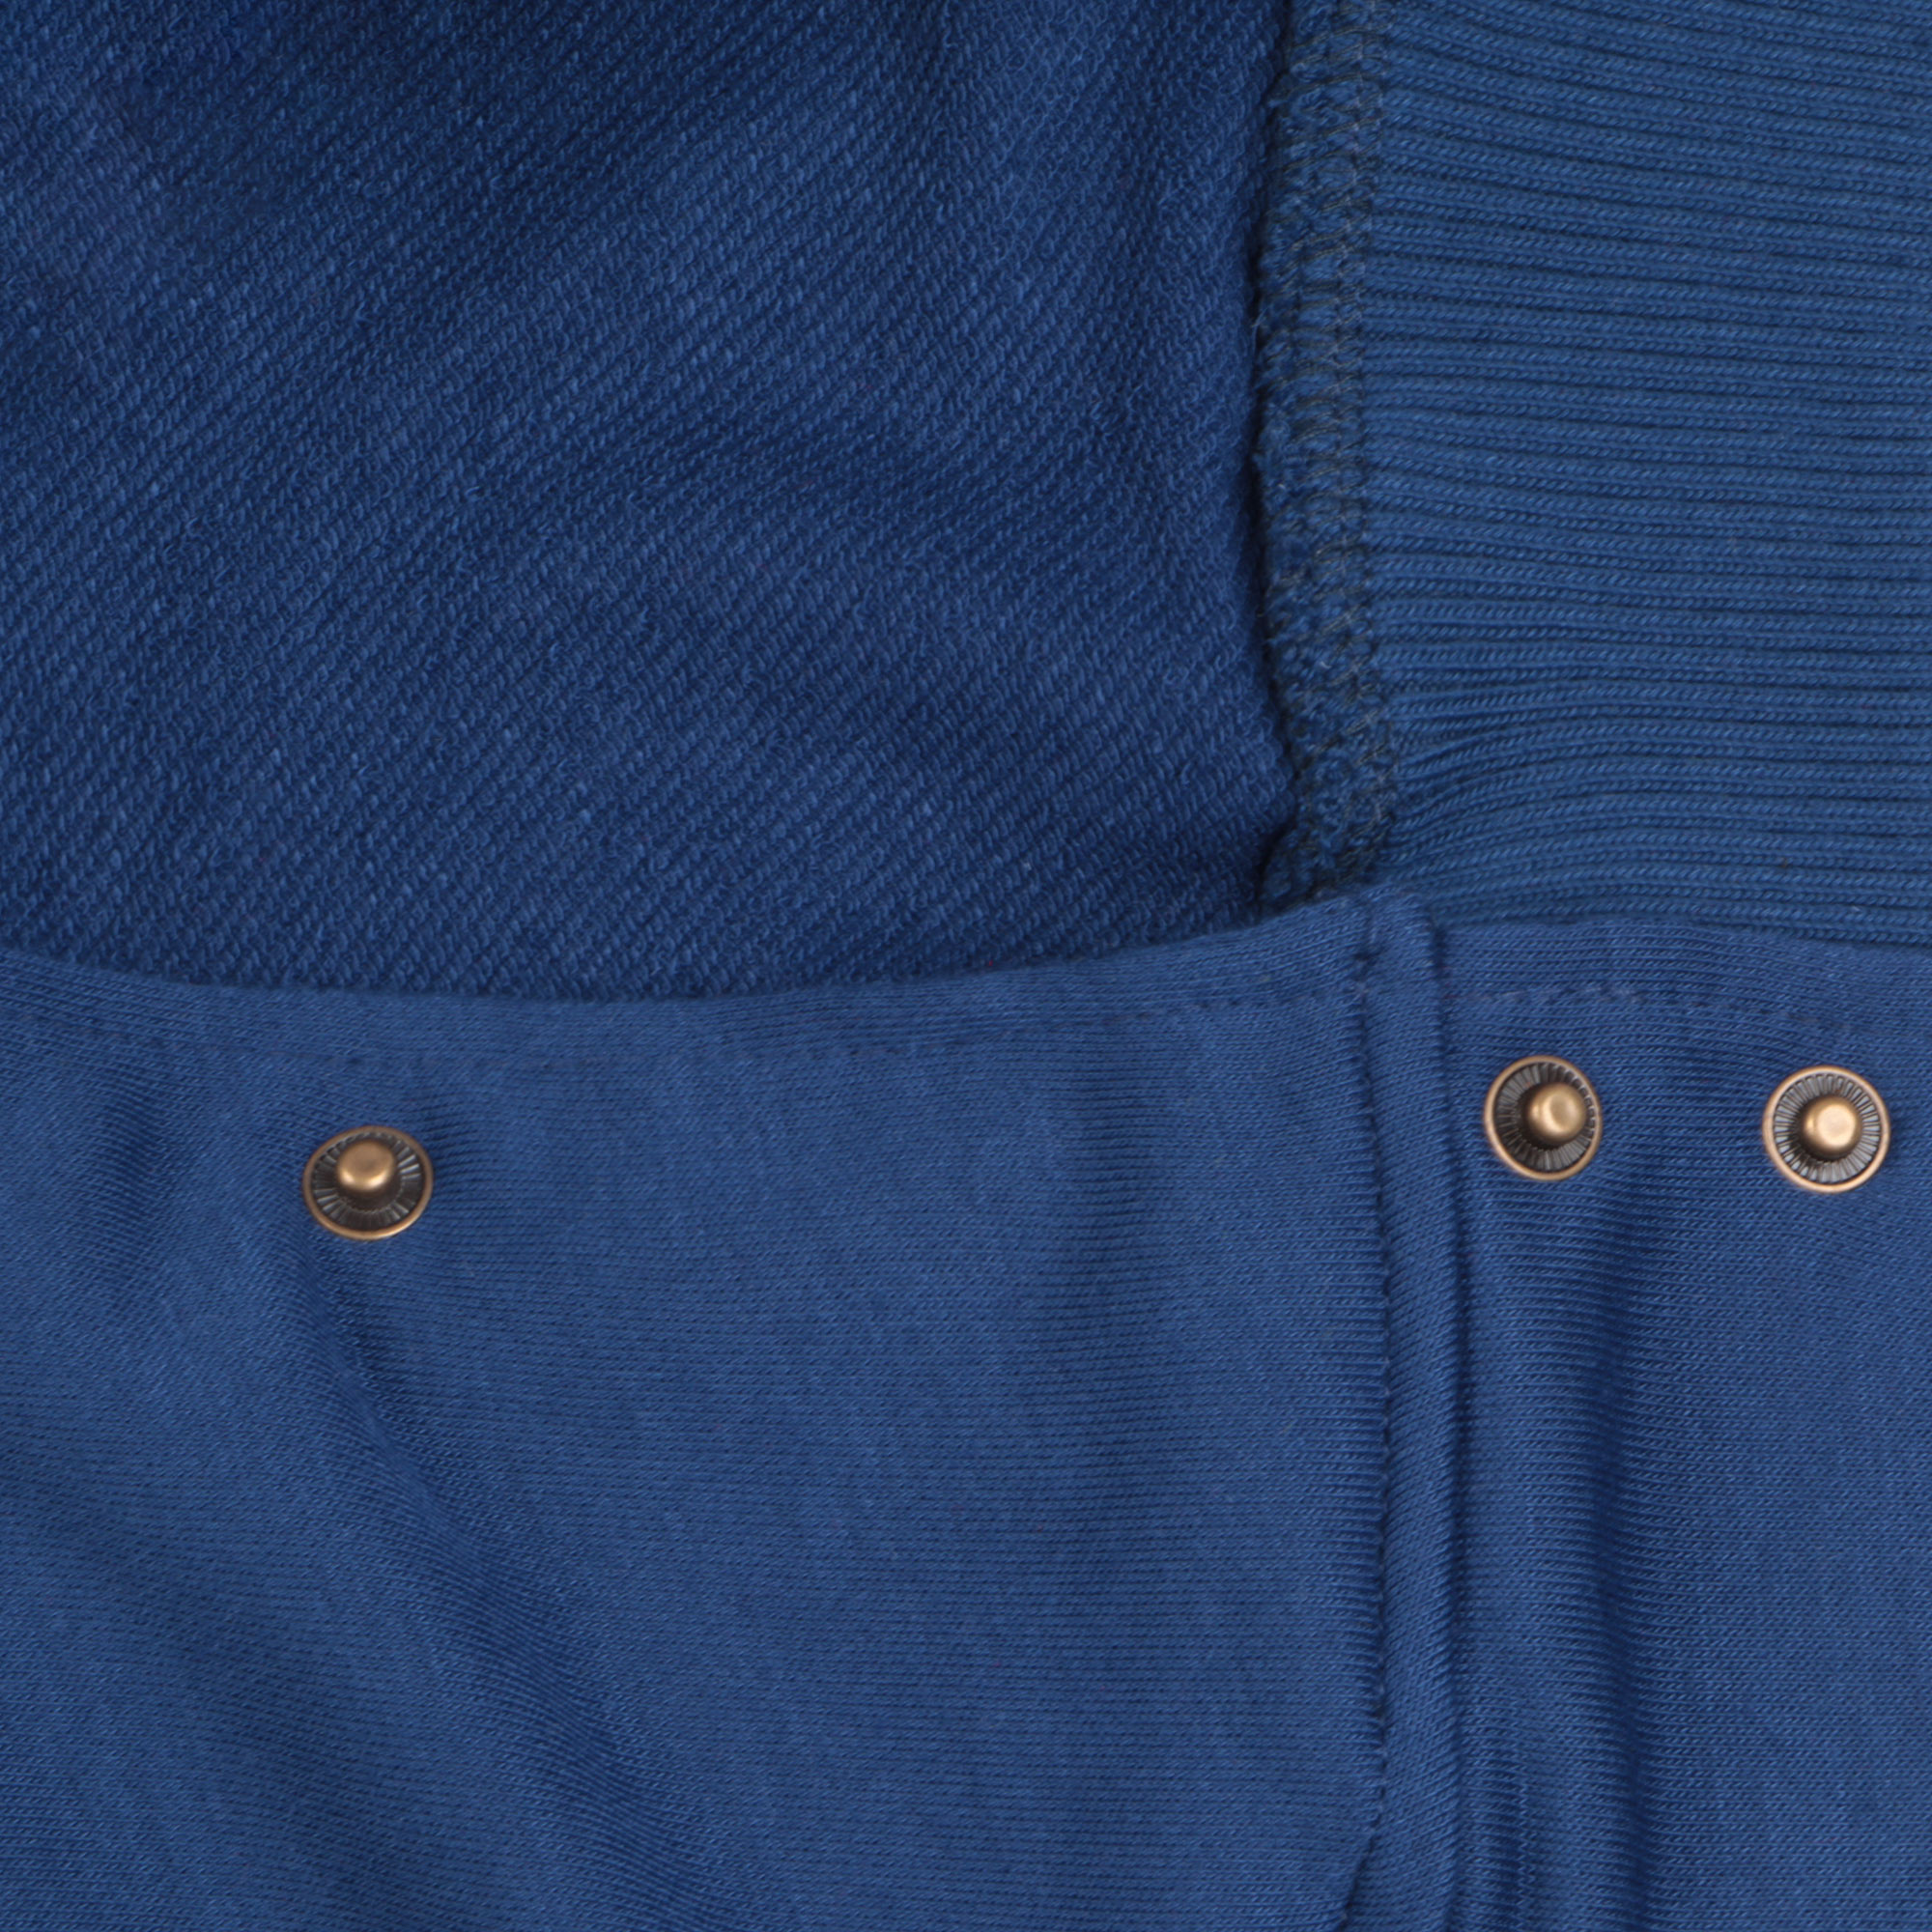 фото Бомбер garment тёмно-синий/белый xl полиэстер